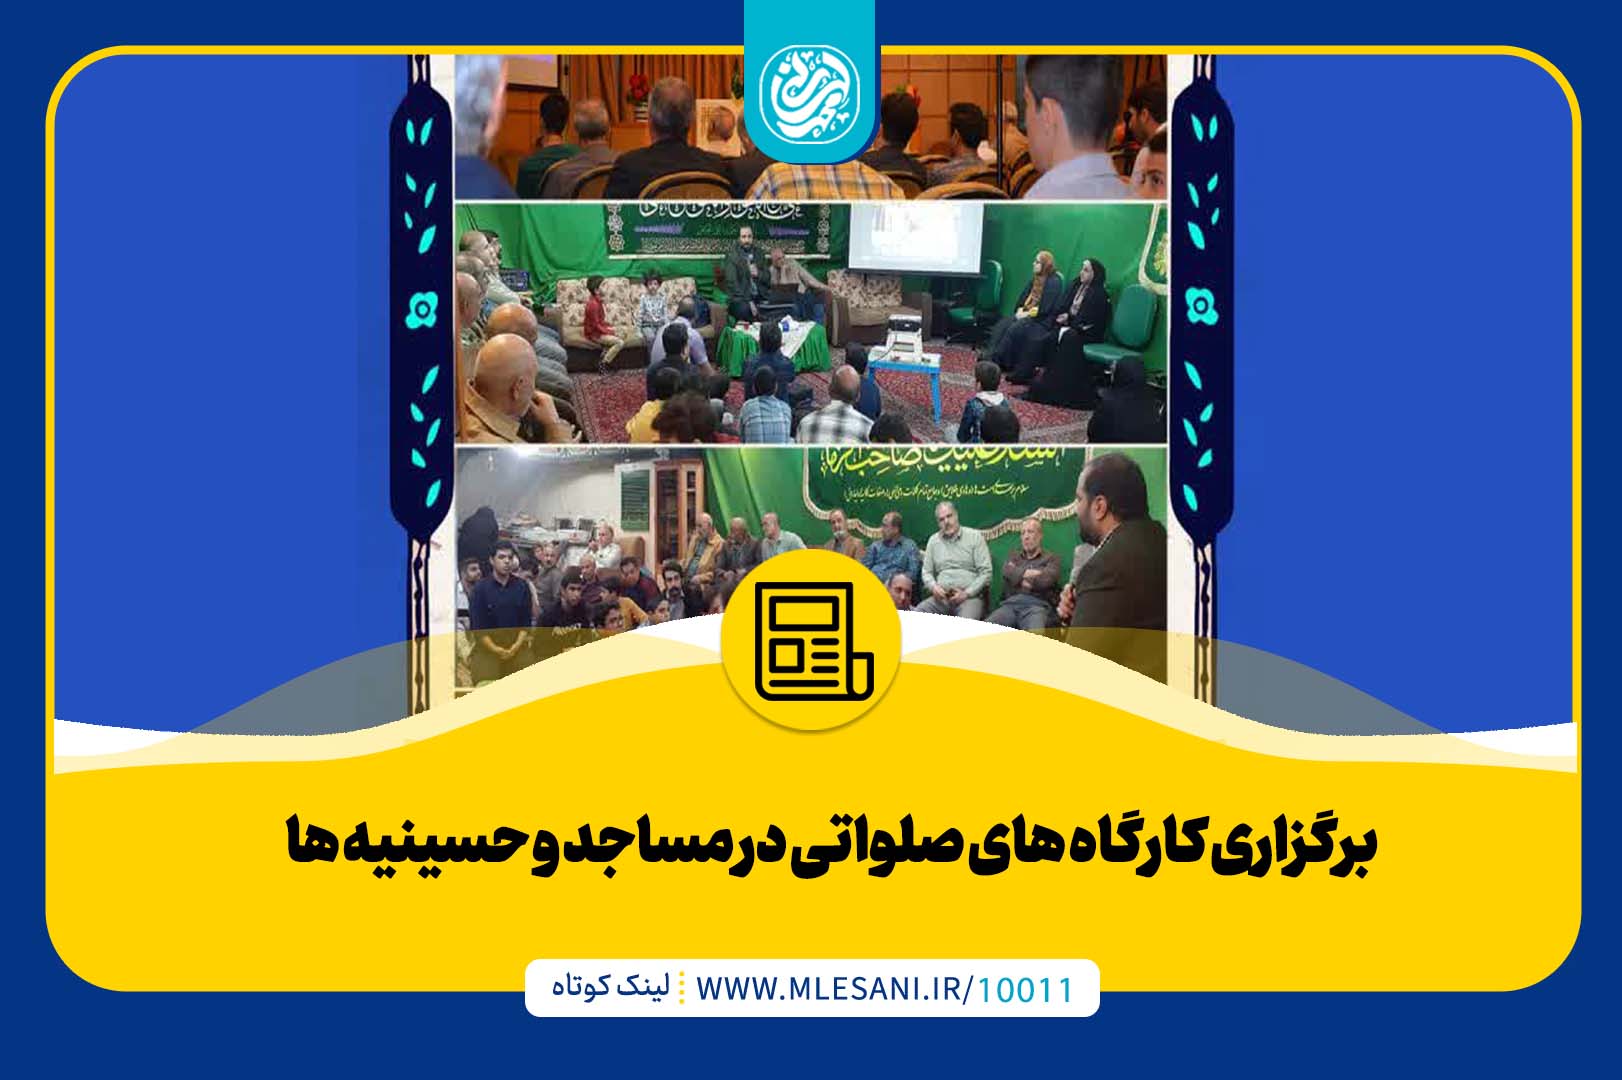 برگزاری کارگاه های صلواتی در مساجد و حسینیه ها با حضور محمد لسانی